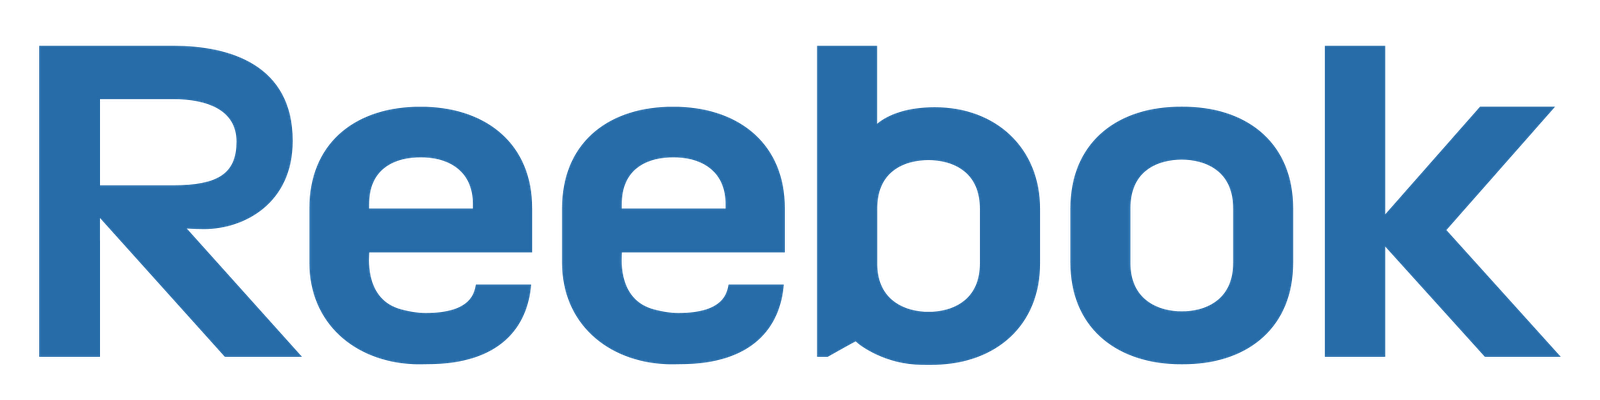 Reebok Logo PNG Images HD